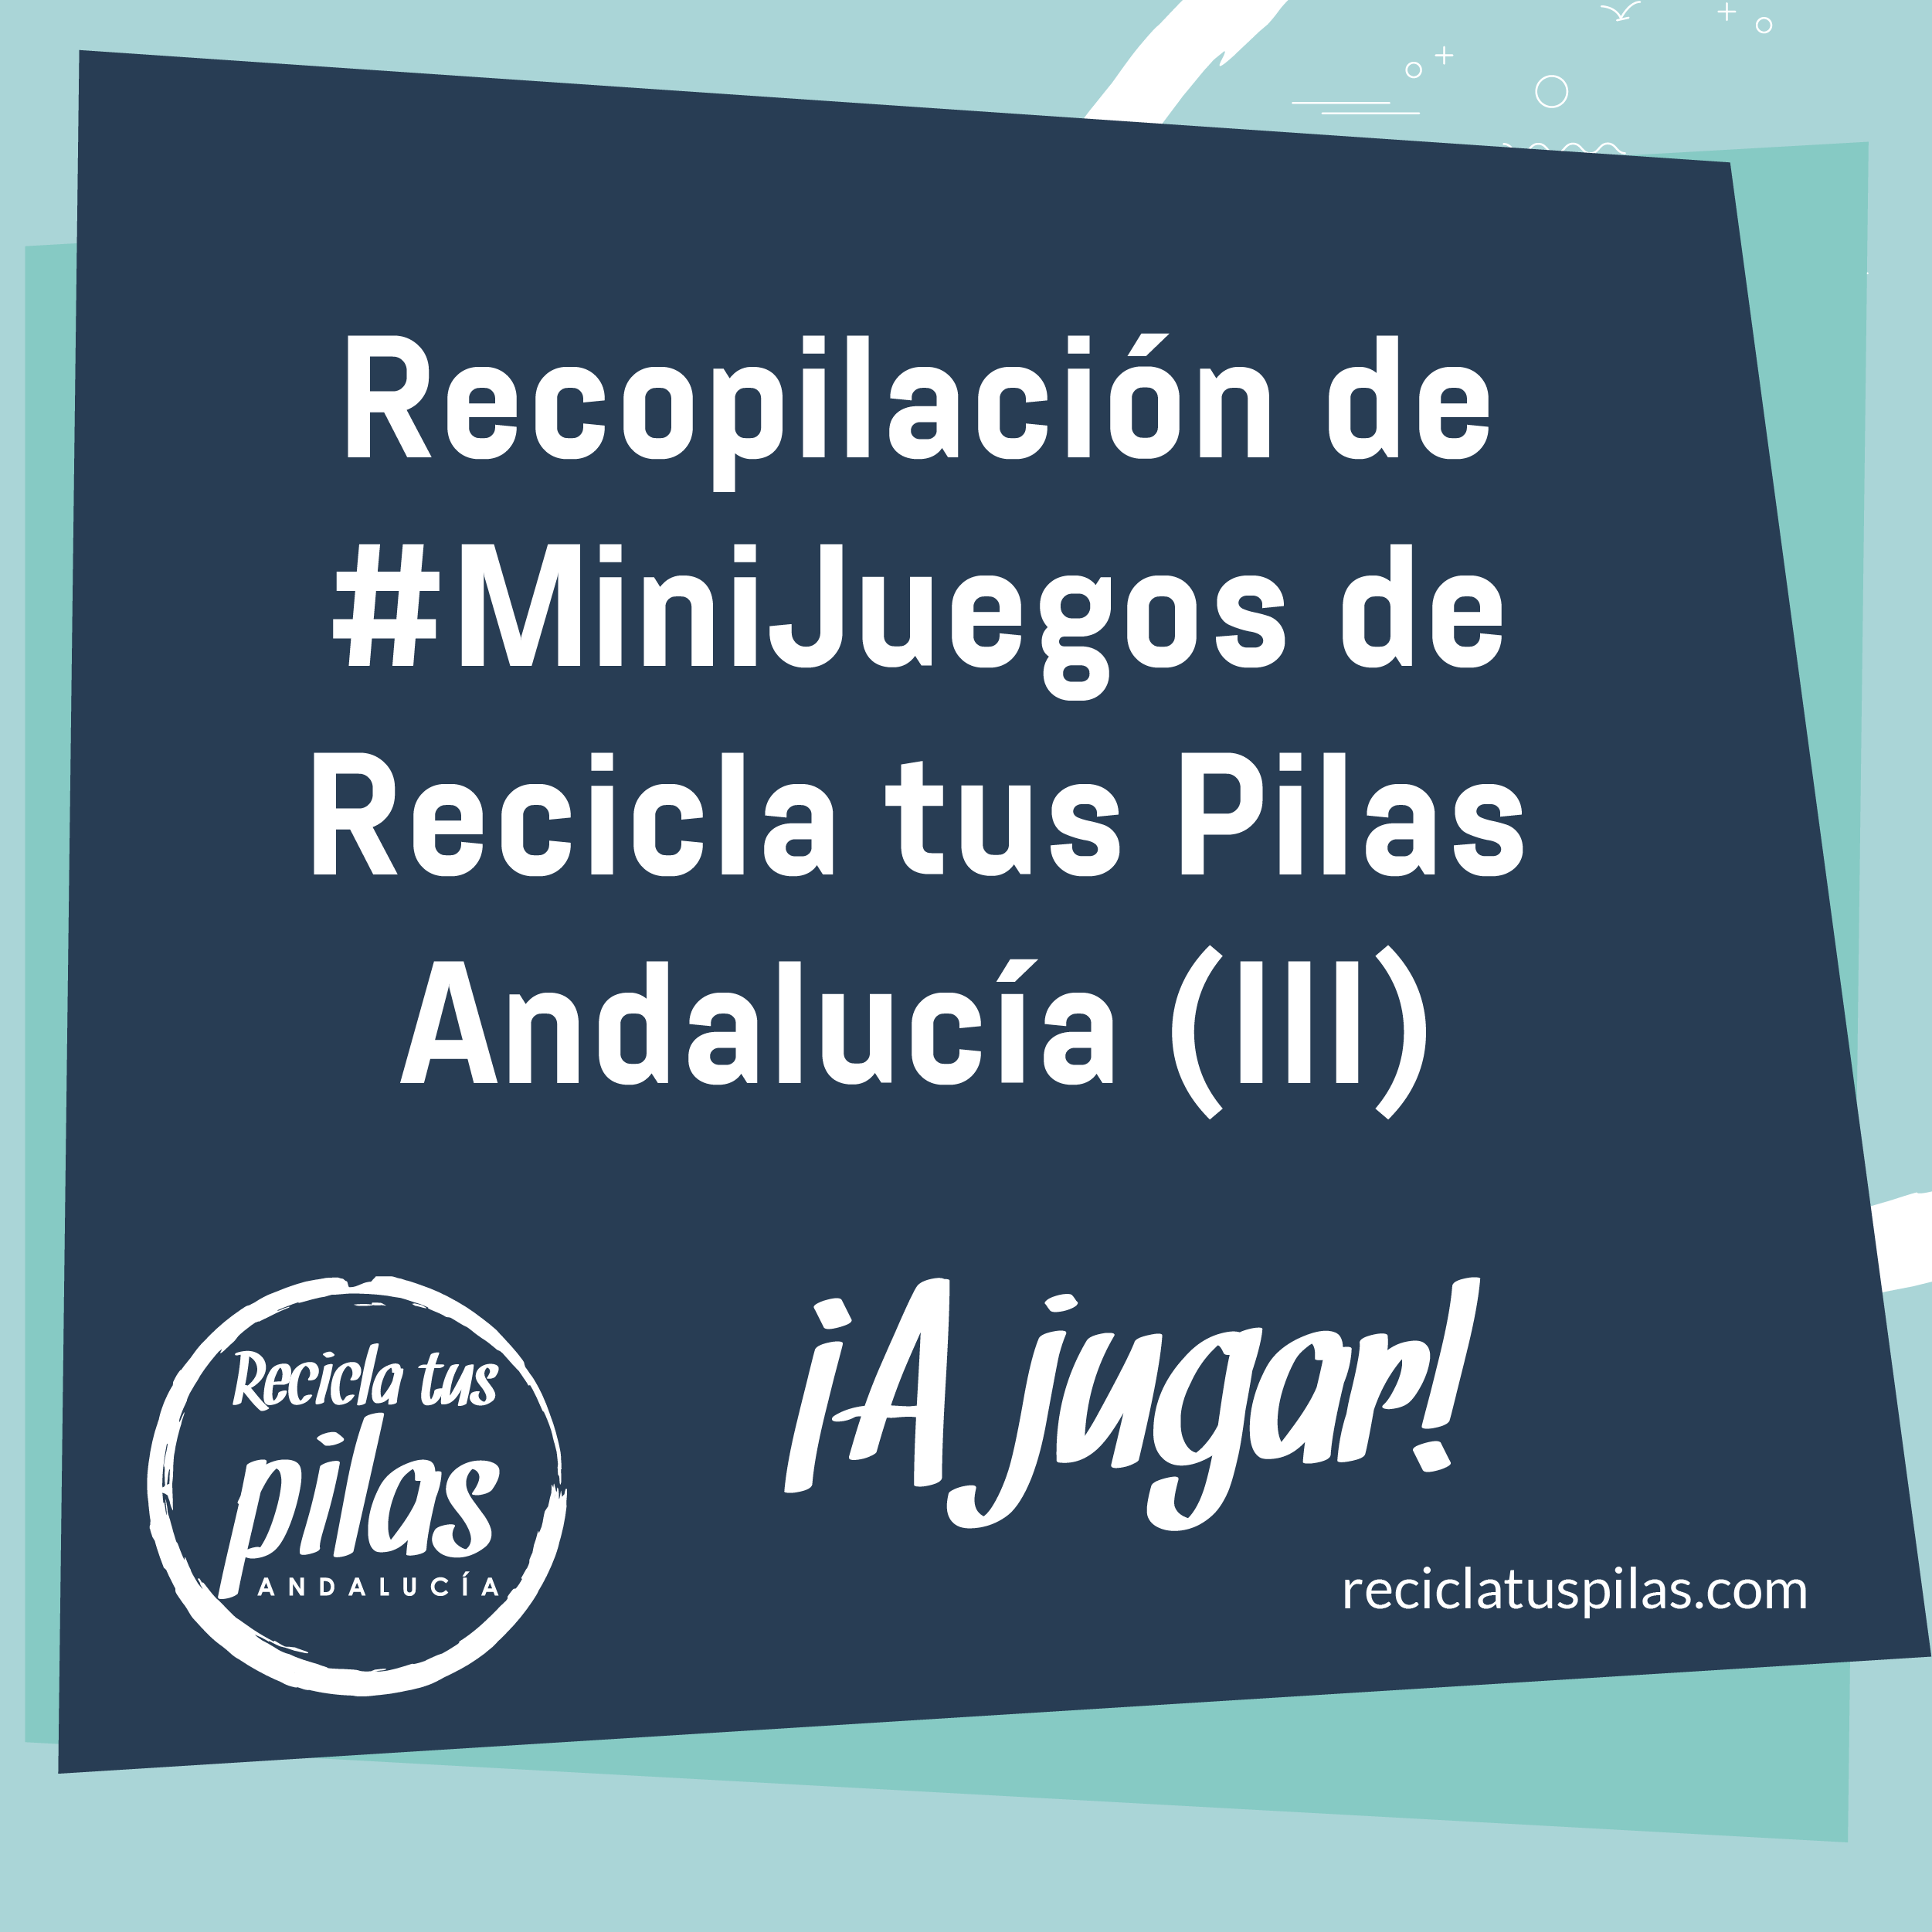 Recopilación de MiniJuegos de Recicla tus Pilas Andalucía